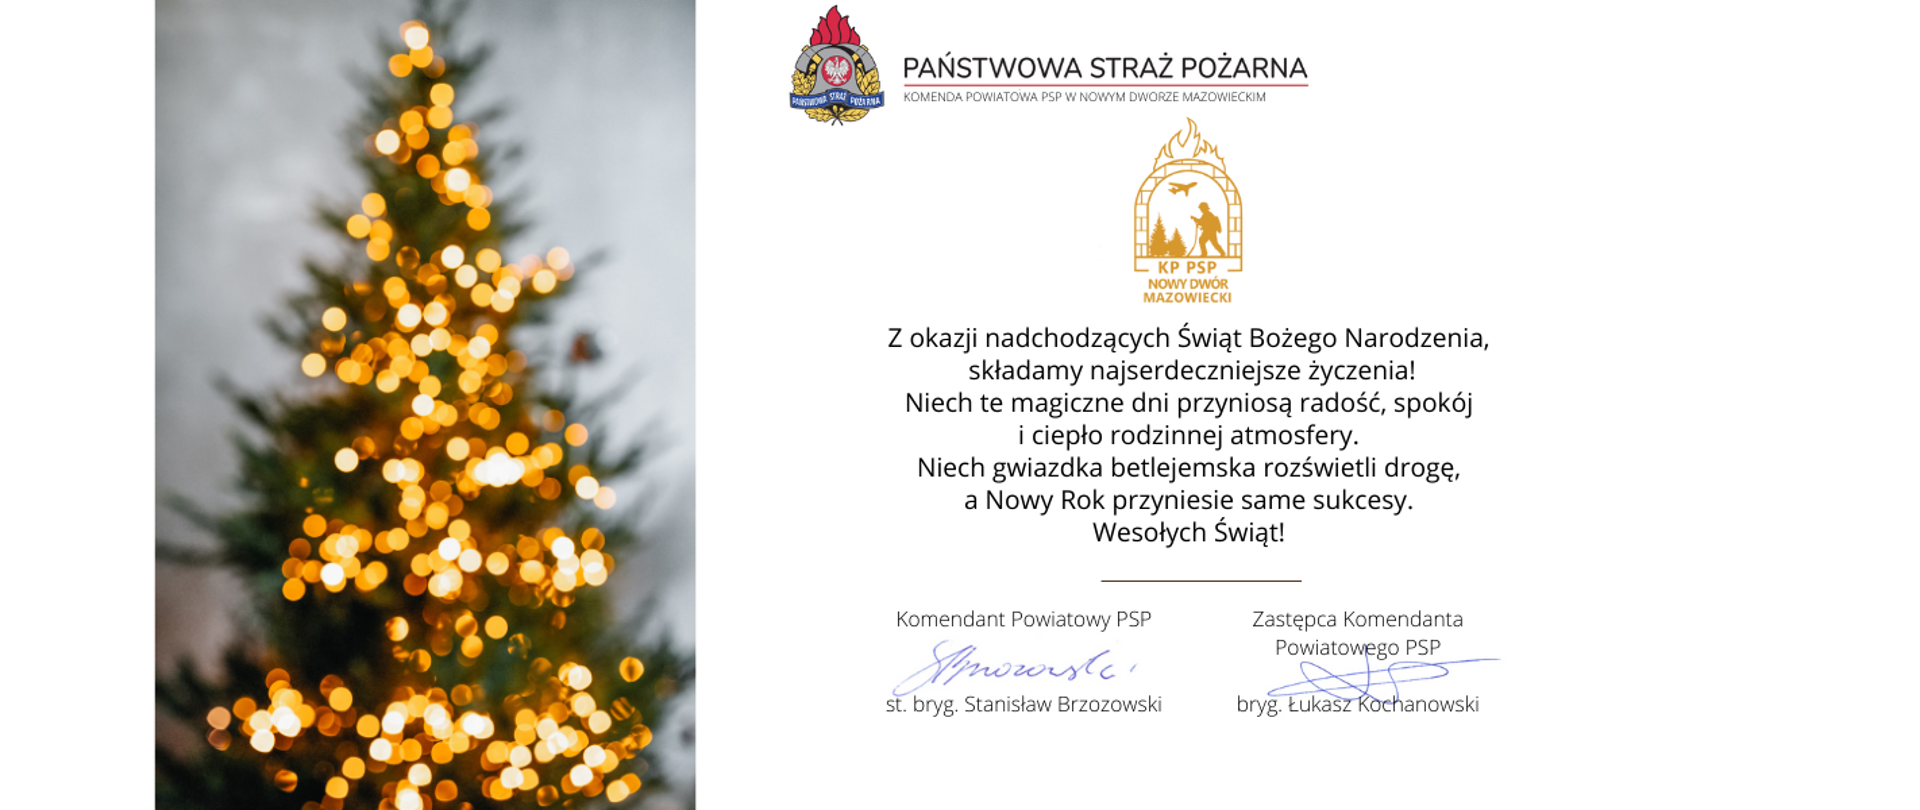 Życzenia_z_okazji_Świąt_Bożego_Narodzenia_Komendanta_Powiatowego_PSP_w_Nowym_Dworze_Mazowieckim